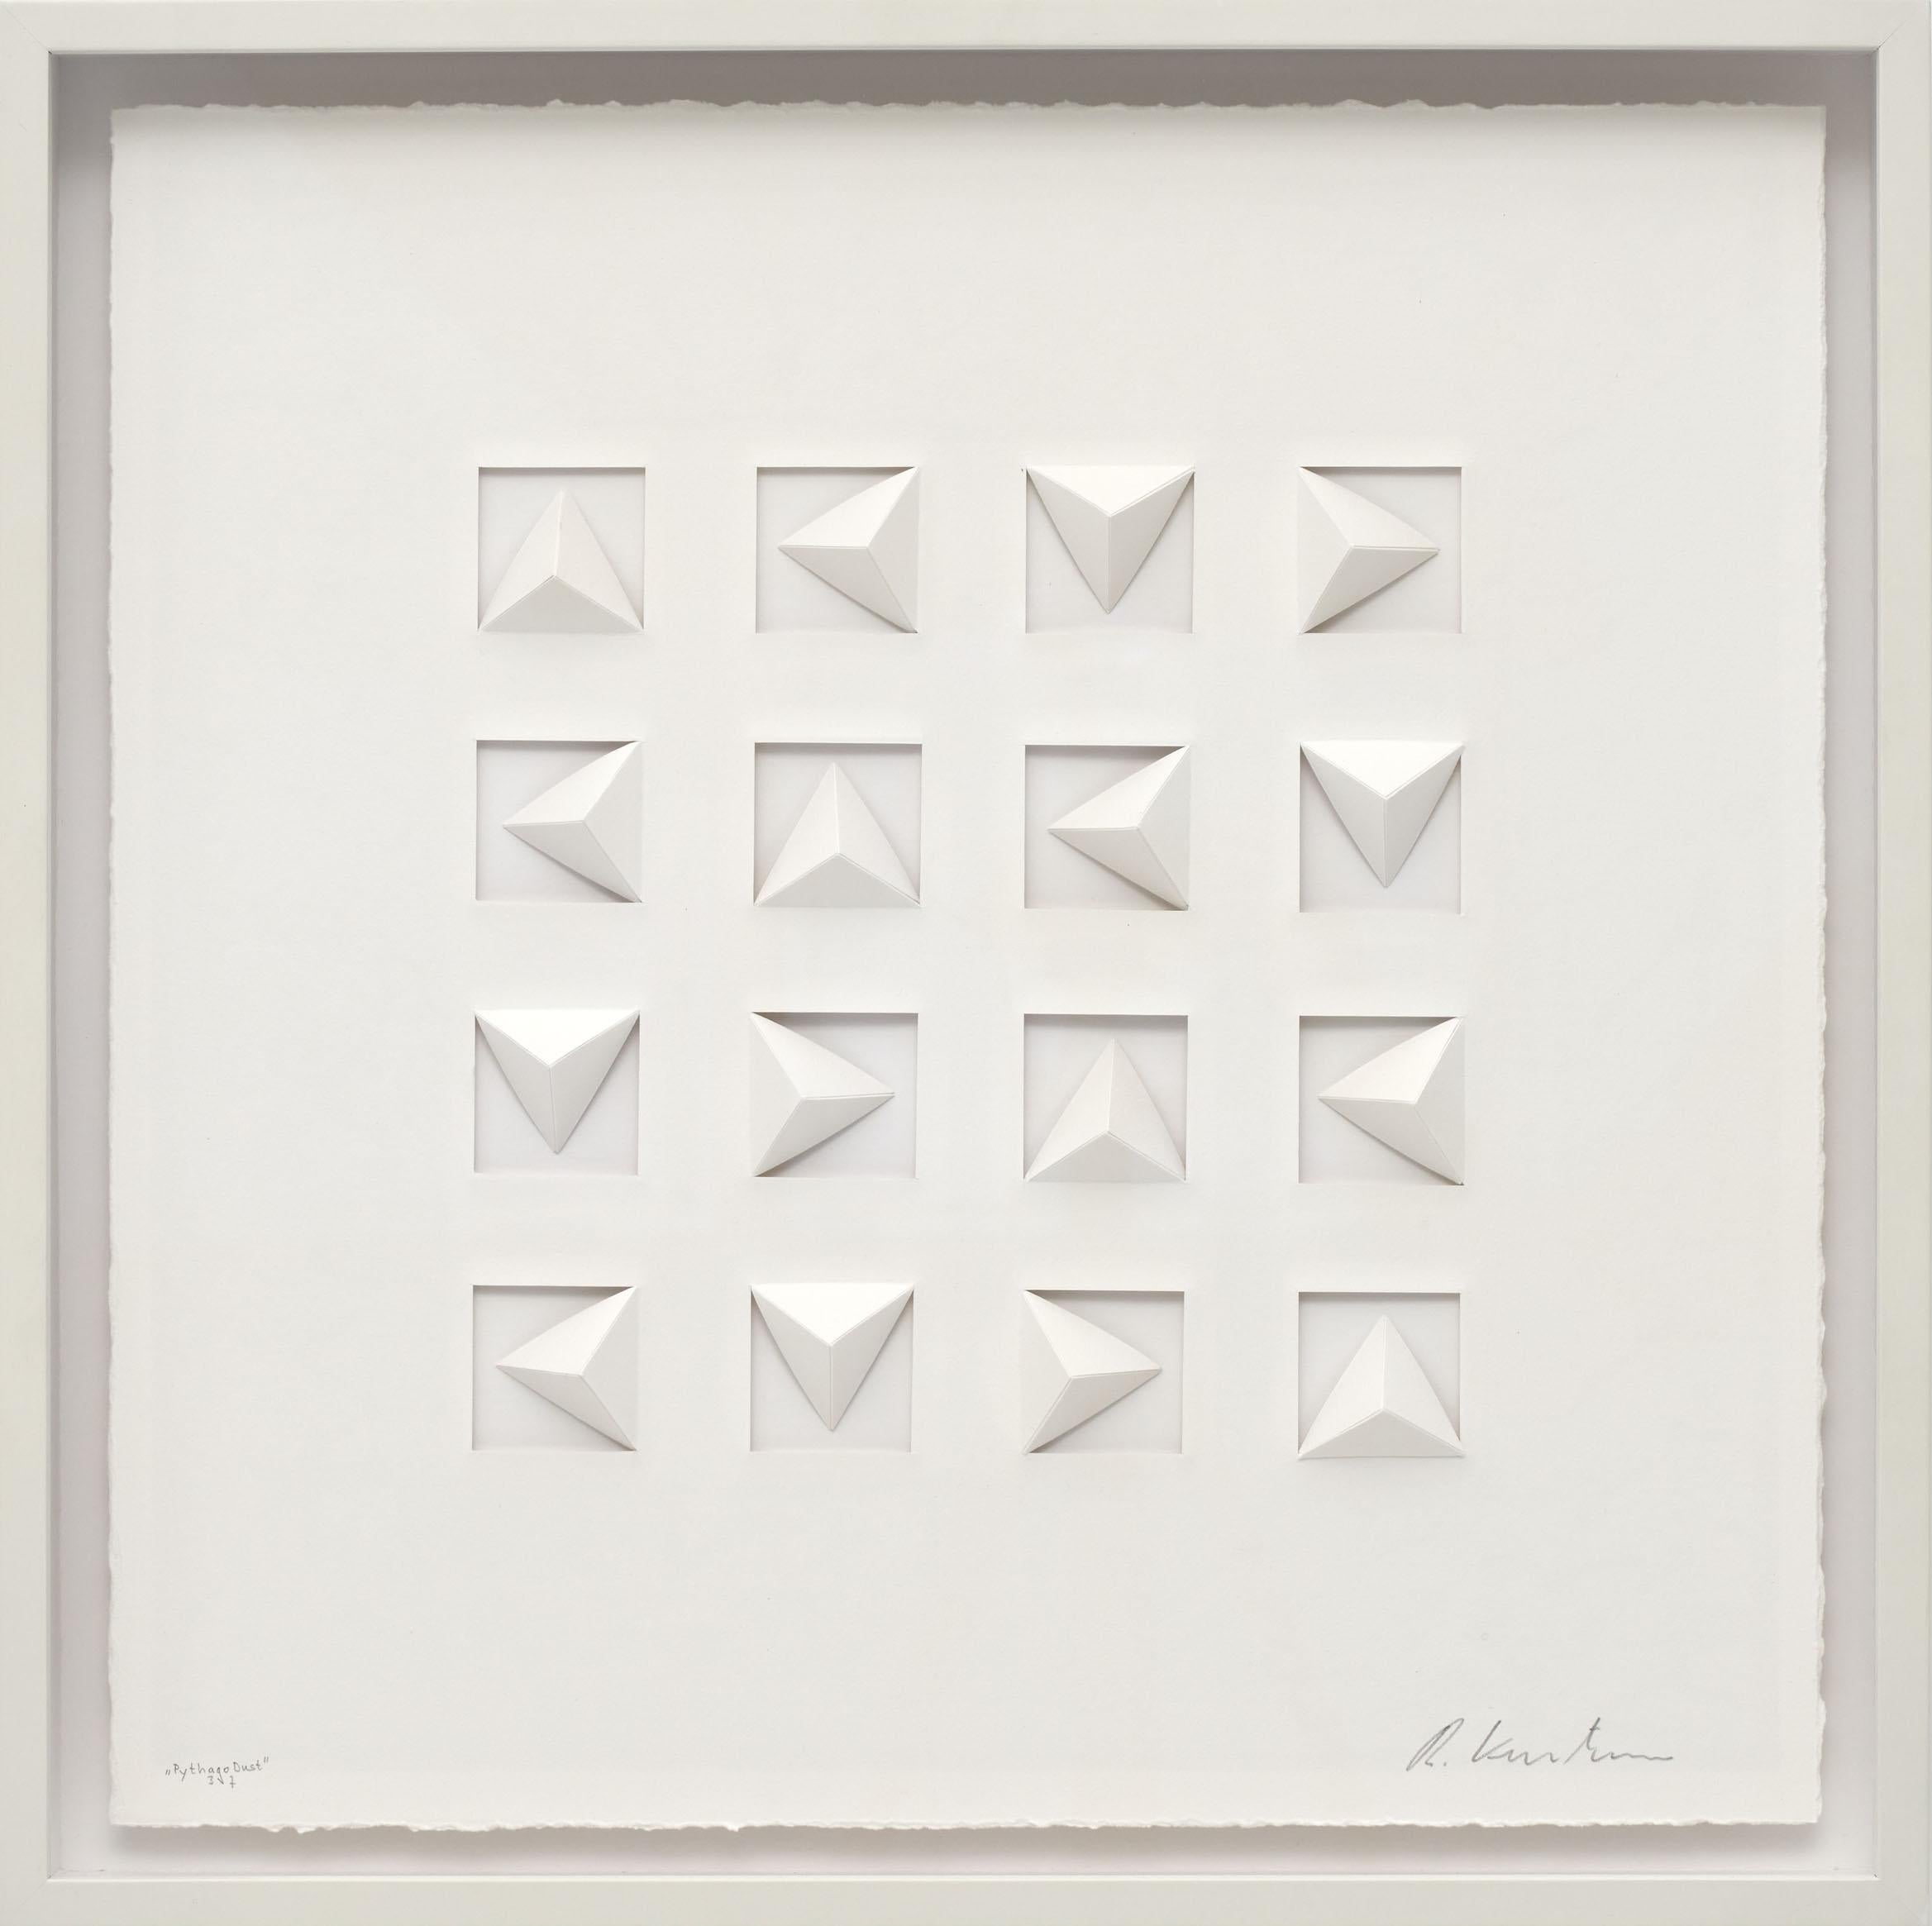 Ralph Kerstner est fasciné par ce qui semble impossible - ses œuvres courbes sur papier ne montrent aucune trace de travail et étonnent le spectateur par leur exécution parfaite. La clarté de ses œuvres, avec leurs éléments géométriques, se retrouve